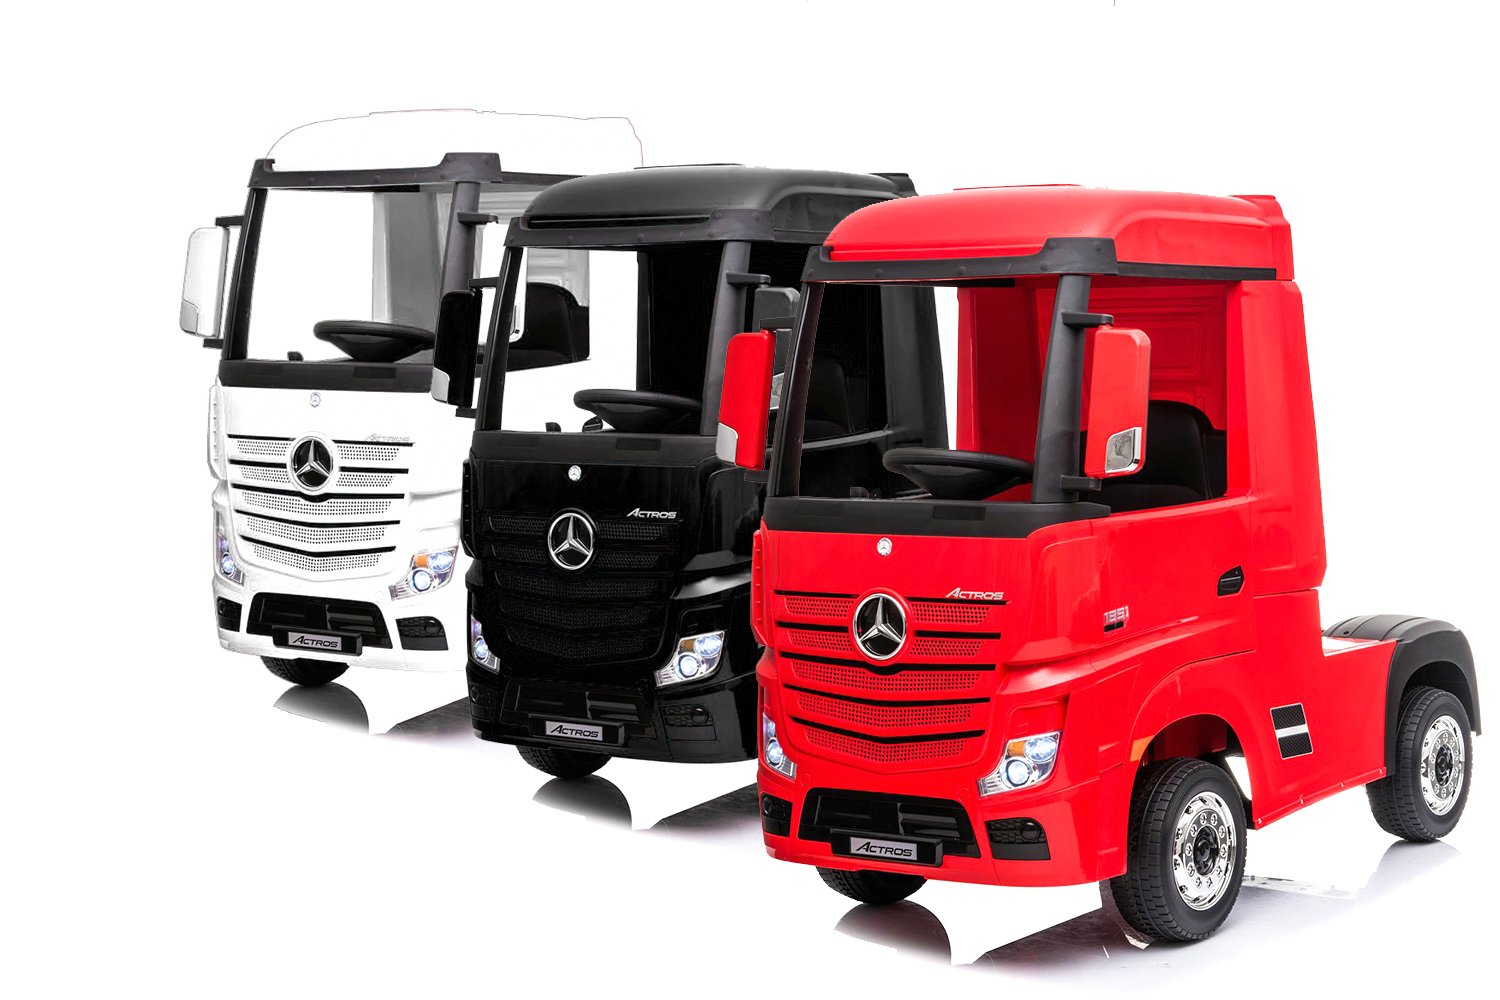 Auflieger, Anhänger für LKW-Fahrerhaus Actros, Mercedes-Benz, Elektro-Kinderautos Marken, Kinderfahrzeuge